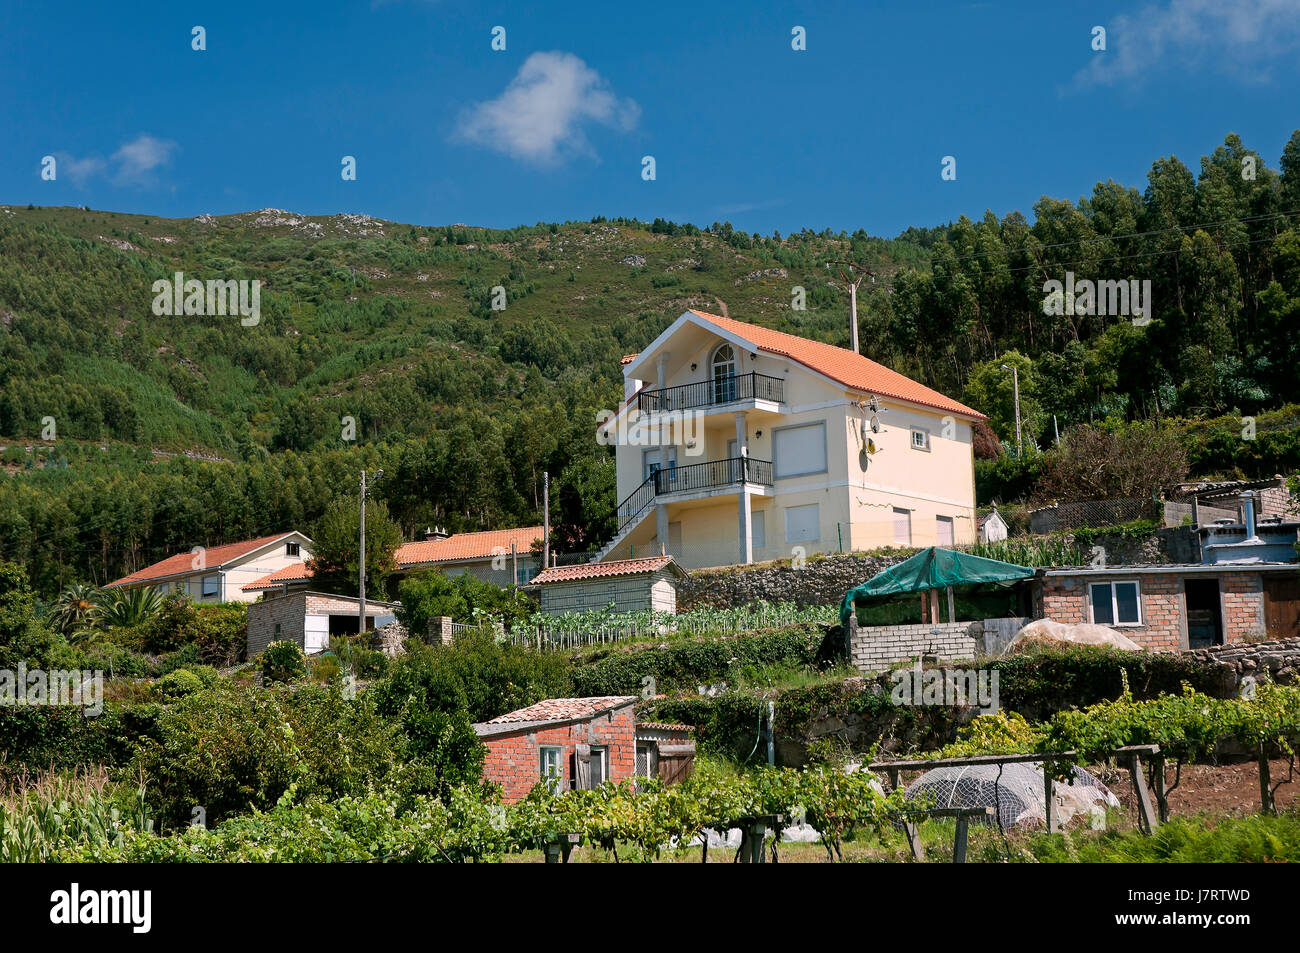 La vivienda rural y el paisaje, Oia, Pontevedra, en la región de Galicia, España, Europa Foto de stock